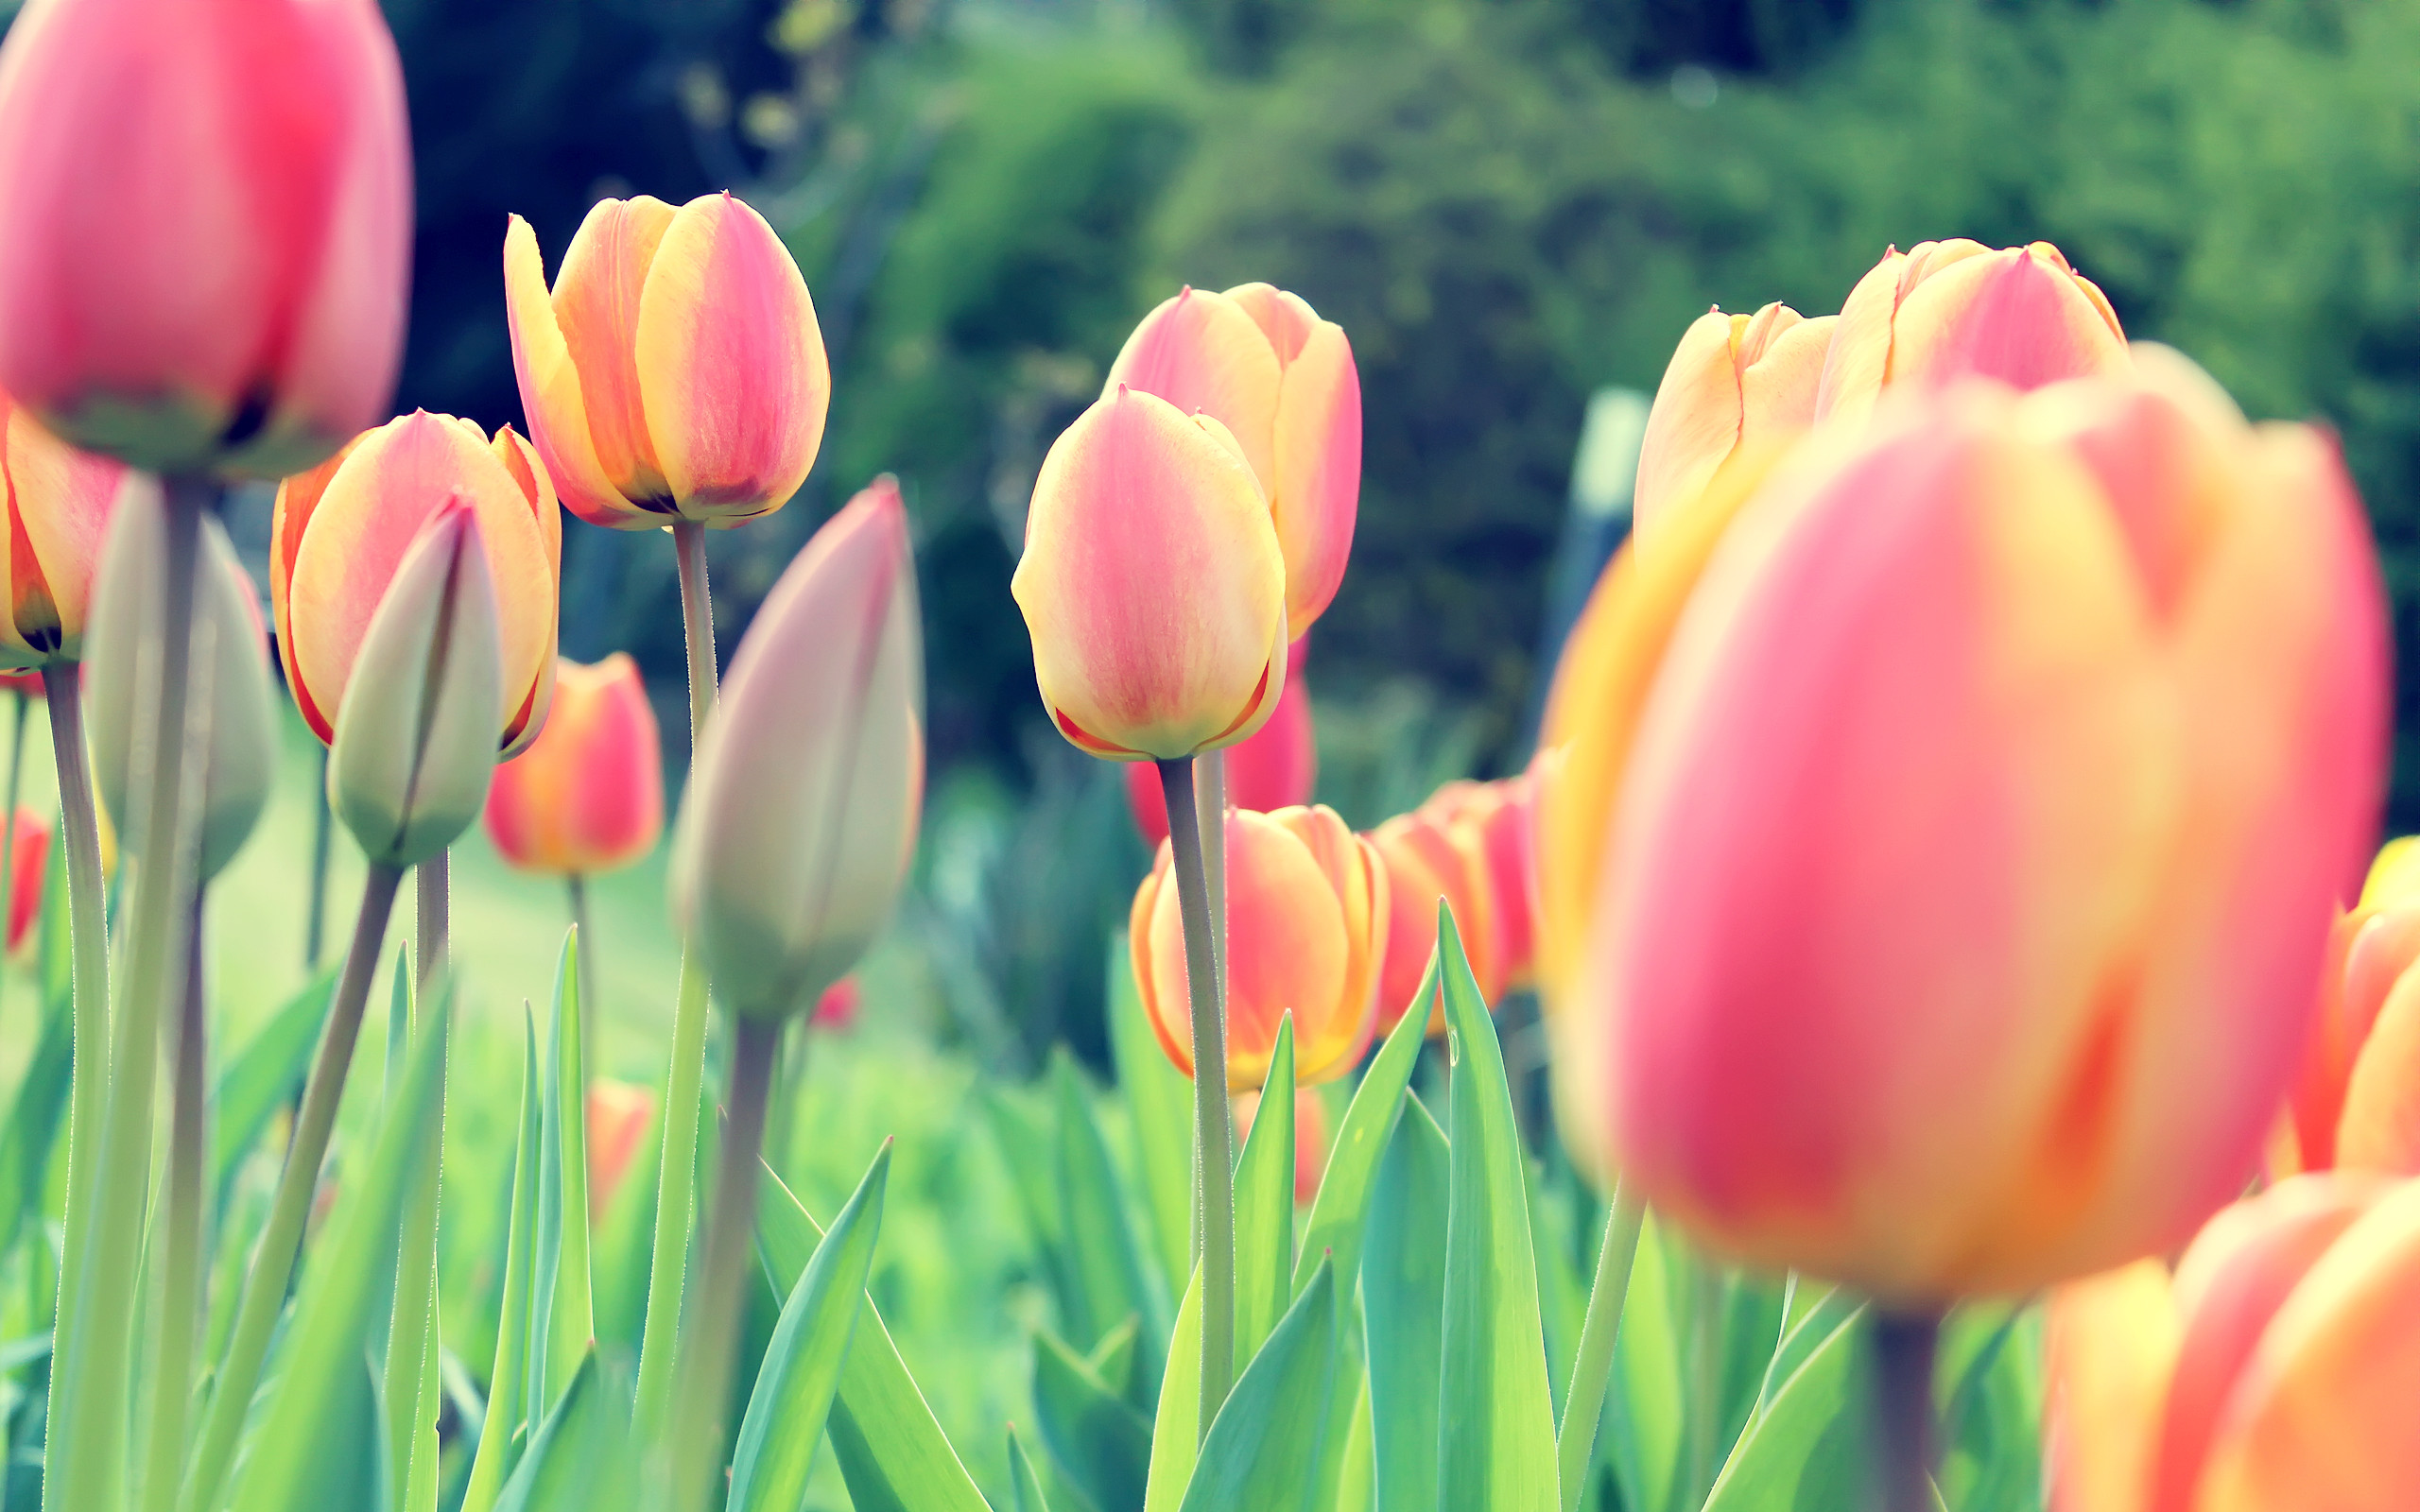 Những hình nền hoa tulip sẽ mang lại cảm giác nhẹ nhàng và tươi sáng cho màn hình điện thoại của bạn. Hãy cùng ngắm nhìn những bông hoa tulip tuyệt đẹp này với chất lượng cao thông qua các bức hình nền hoa tulip độc đáo.